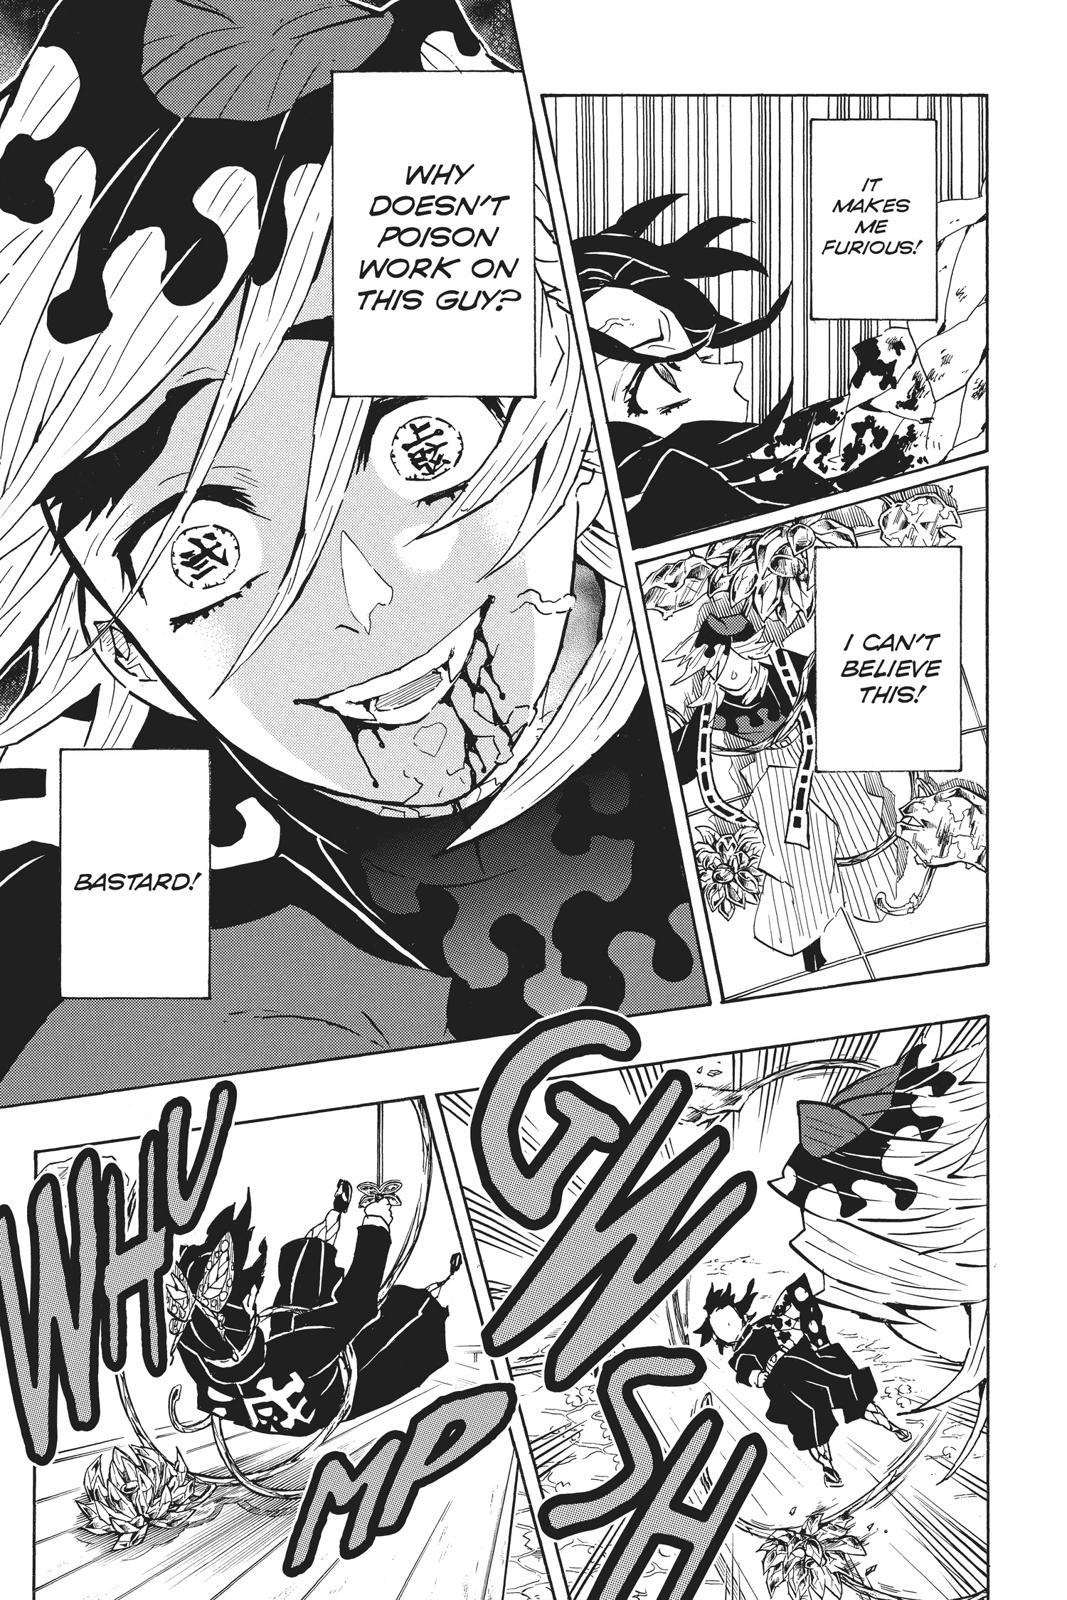 Demon Slayer Manga Manga Chapter - 143 - image 10